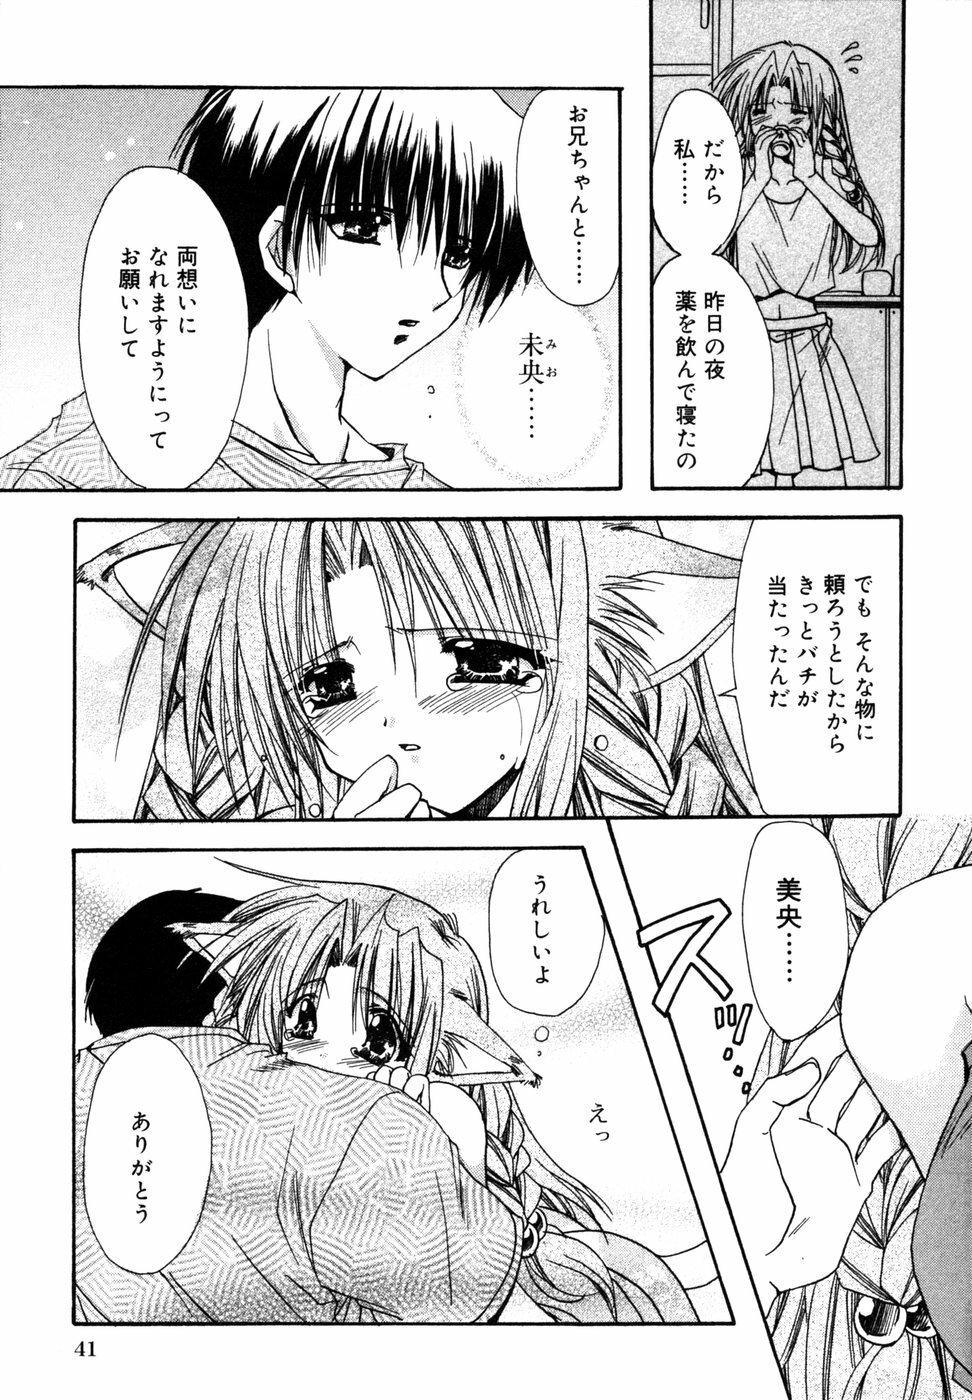 [Anthology] Himitsu no Tobira 5 Kinshin Ai Anthology (The Secret Door) page 44 full